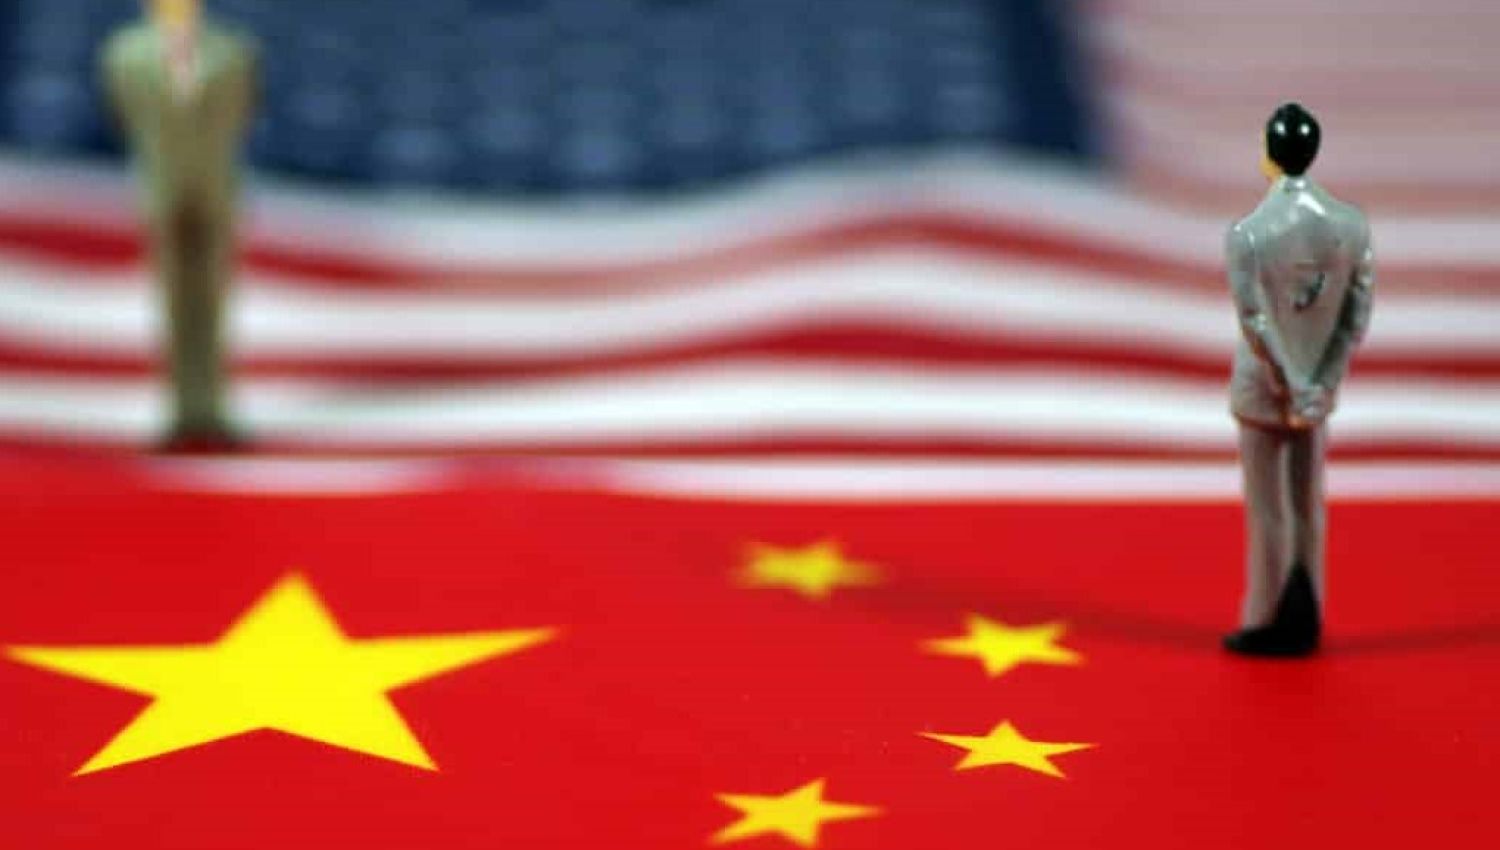 بلومبيرغ: الجيش الأمريكي غير جاهز للحرب مع الصين